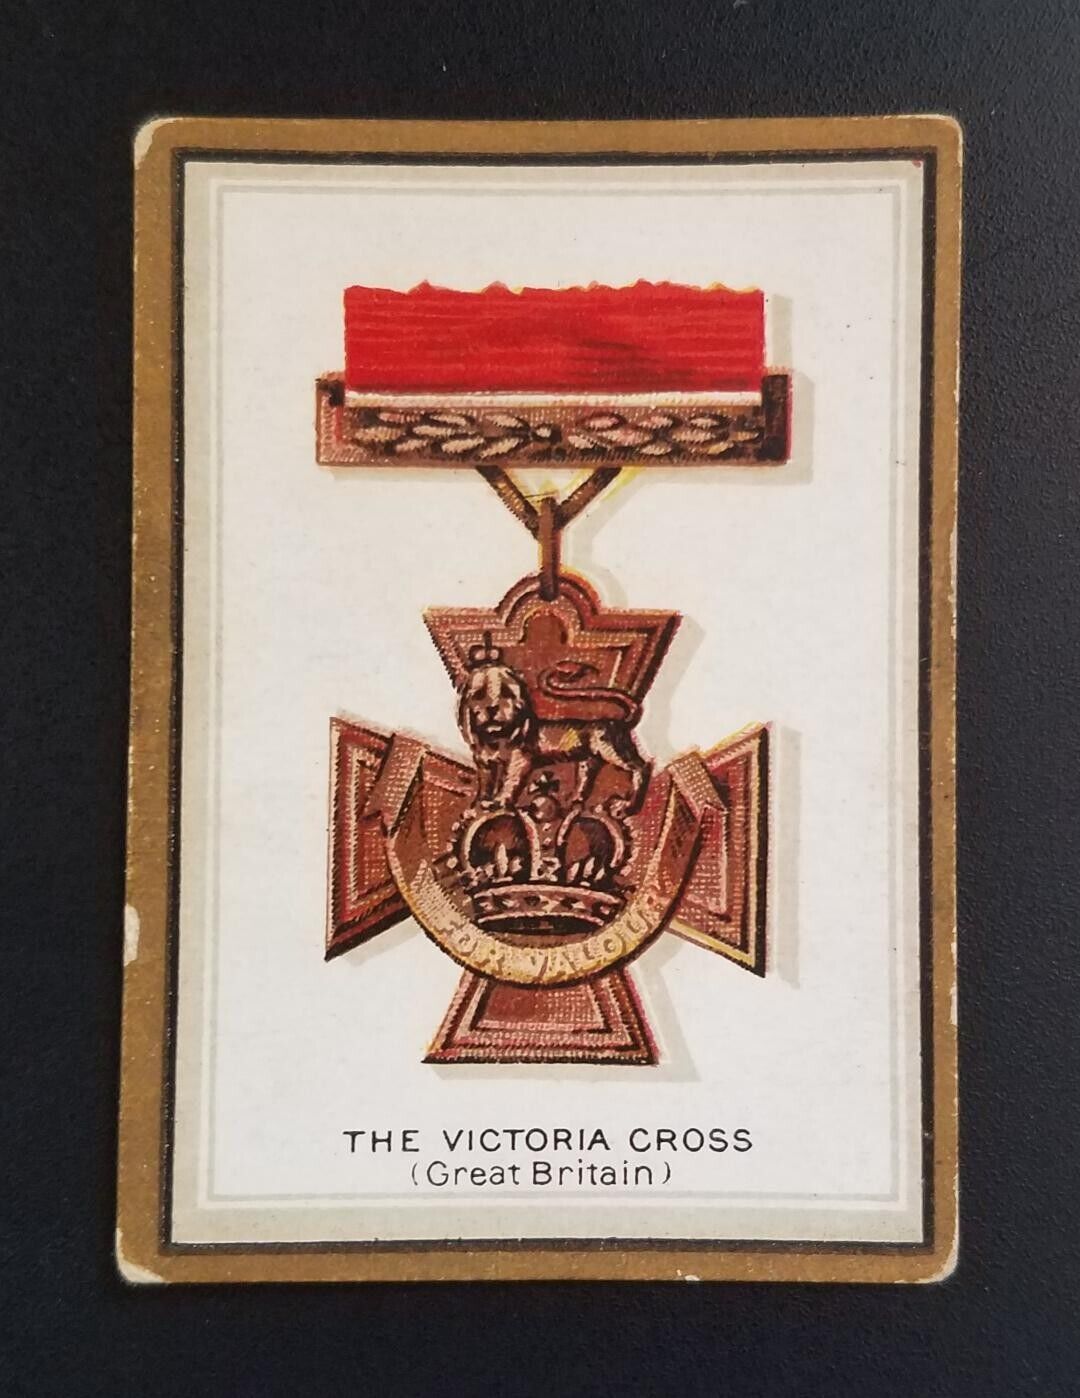 1911 ATC Emblem Series (Emblem Cigarettes Back) - The Victoria Cross - VG